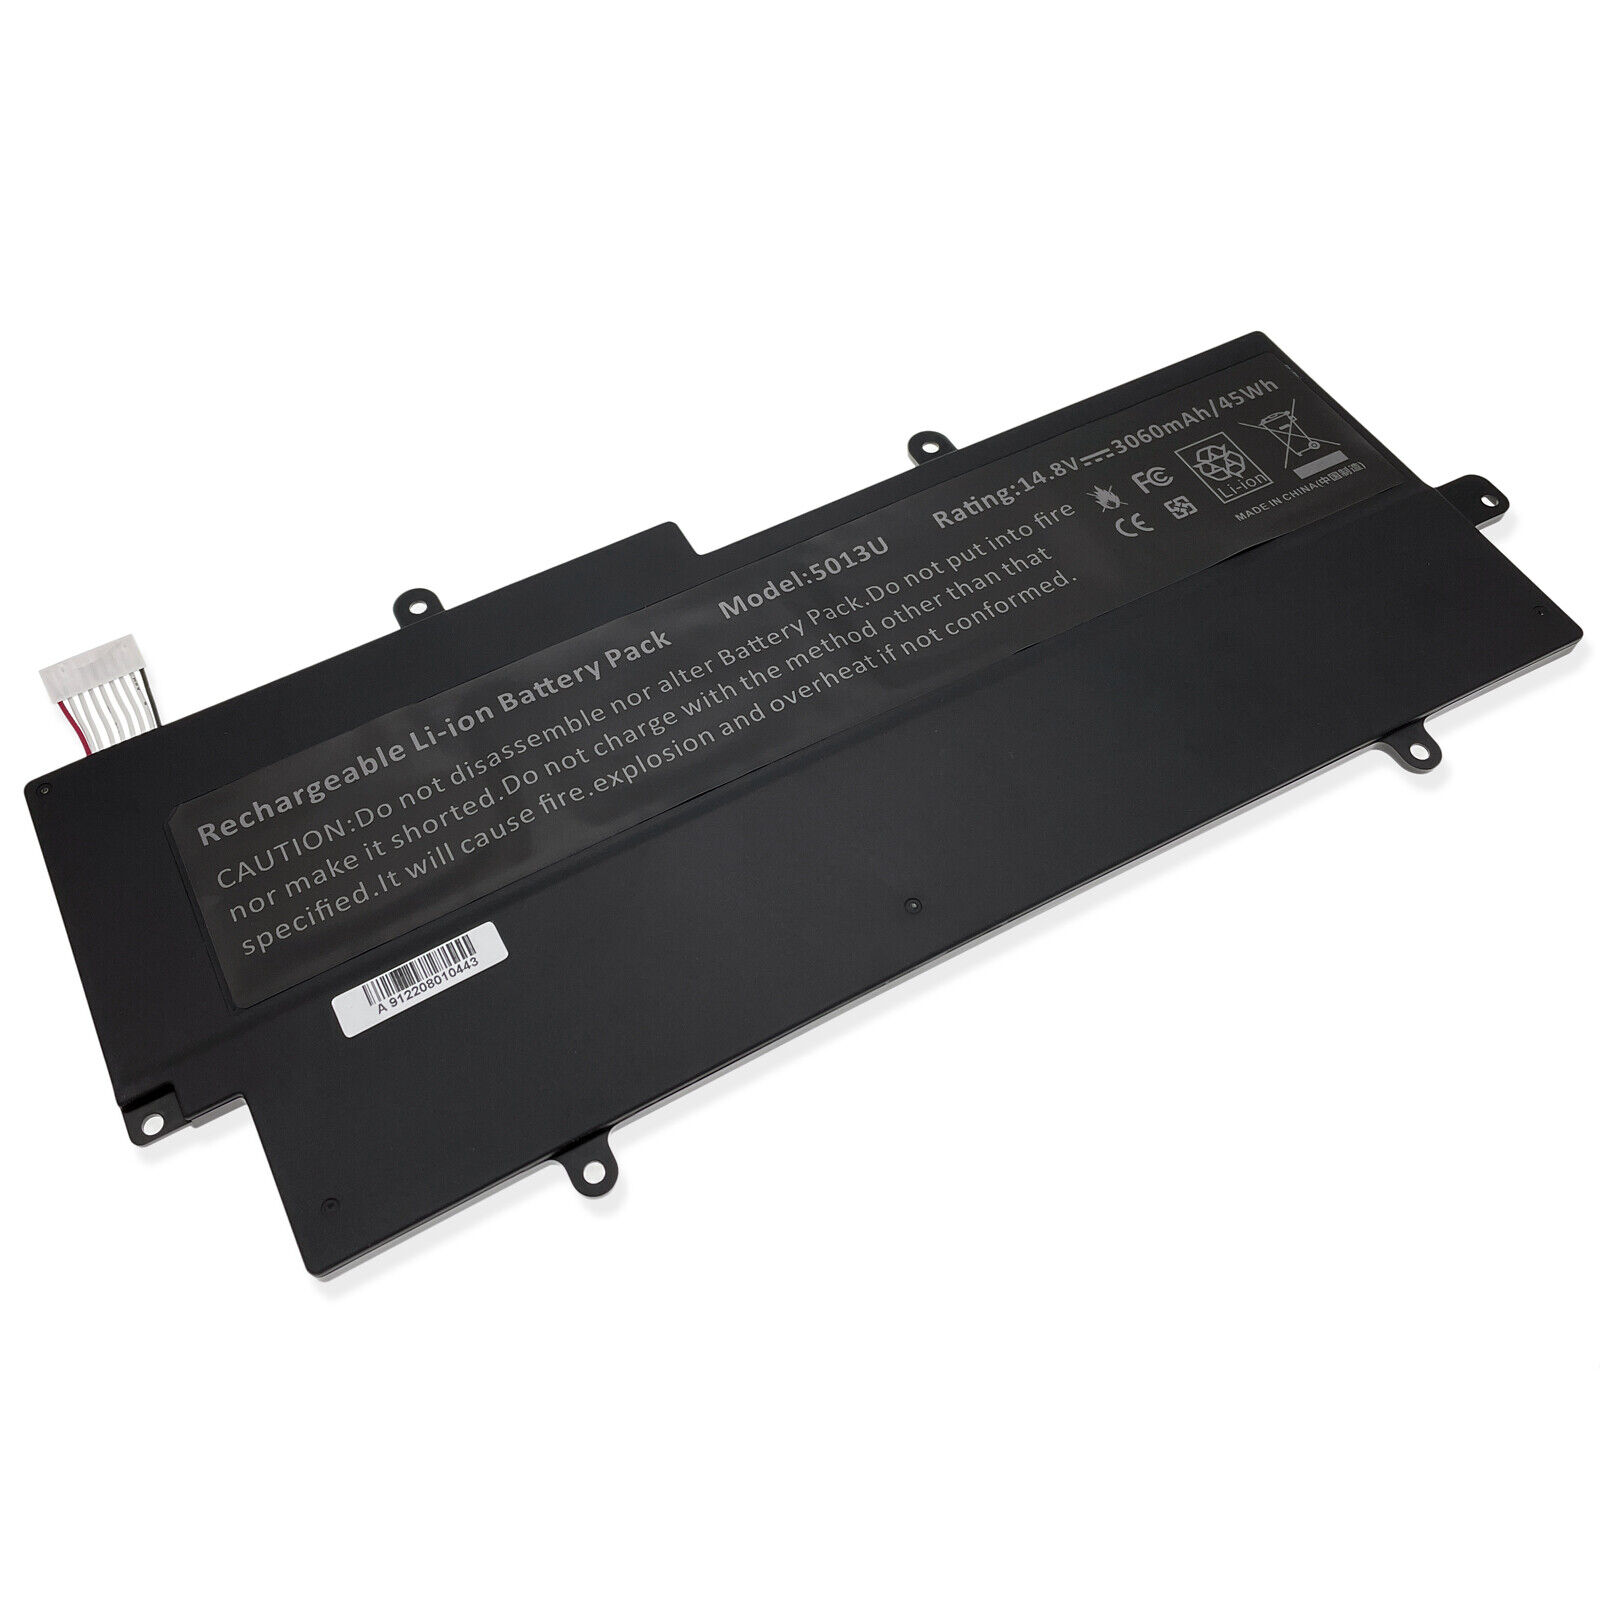 Brand New Battery For Toshiba Portege Z830 Z835 Z930 Z935 Ultrabook PA5013U-1BRS